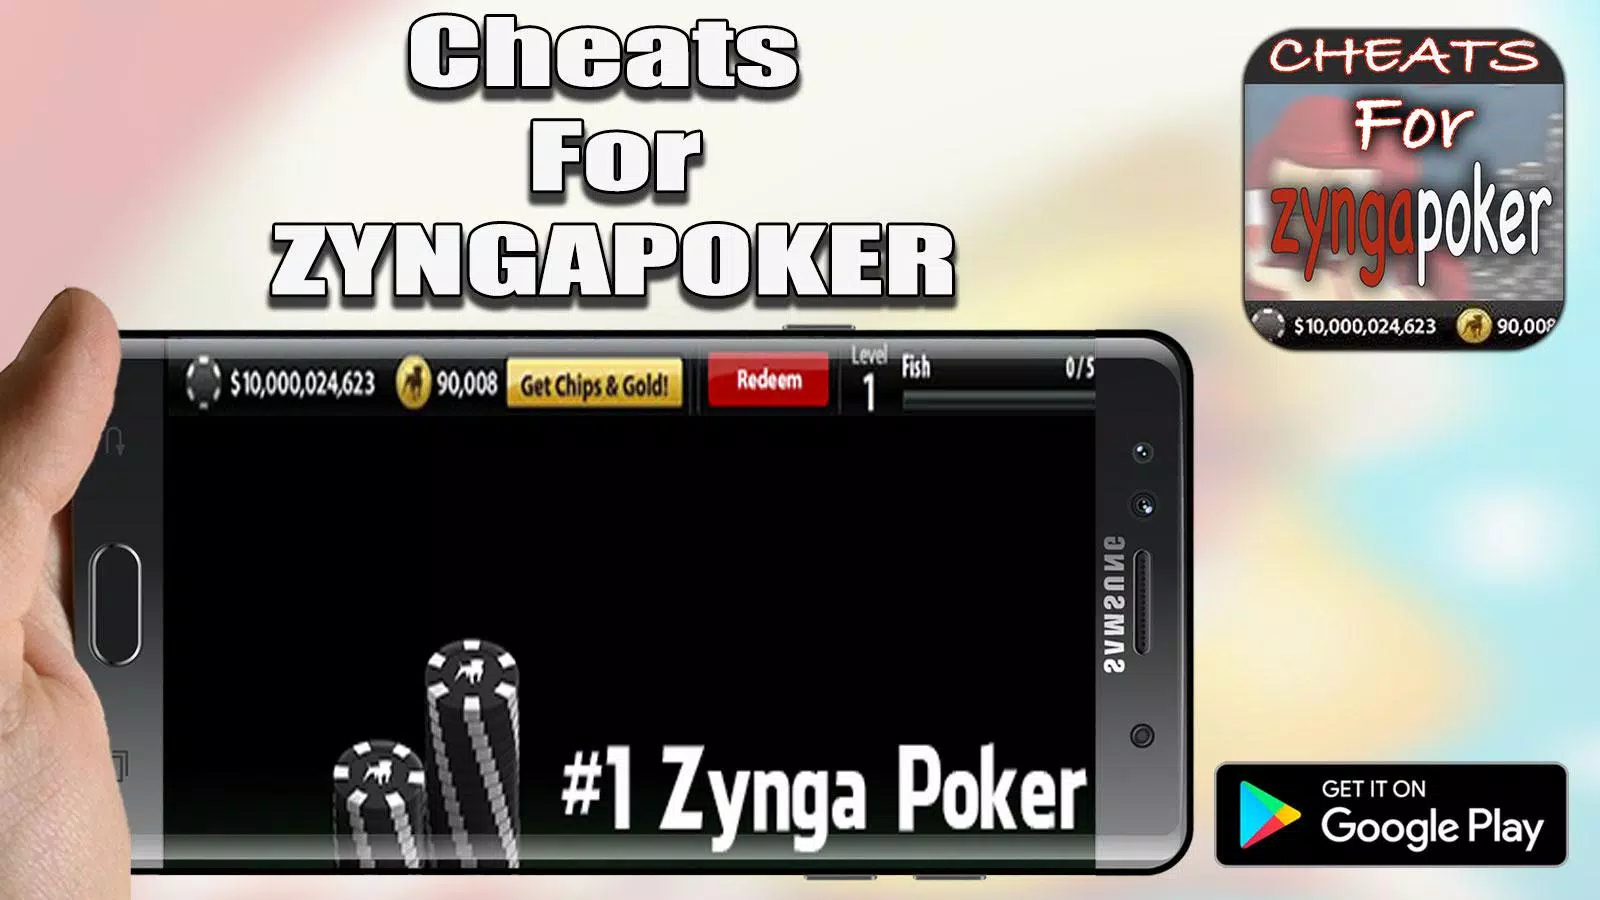 Cheats For Zynga Poker Game Real Prank APK للاندرويد تنزيل